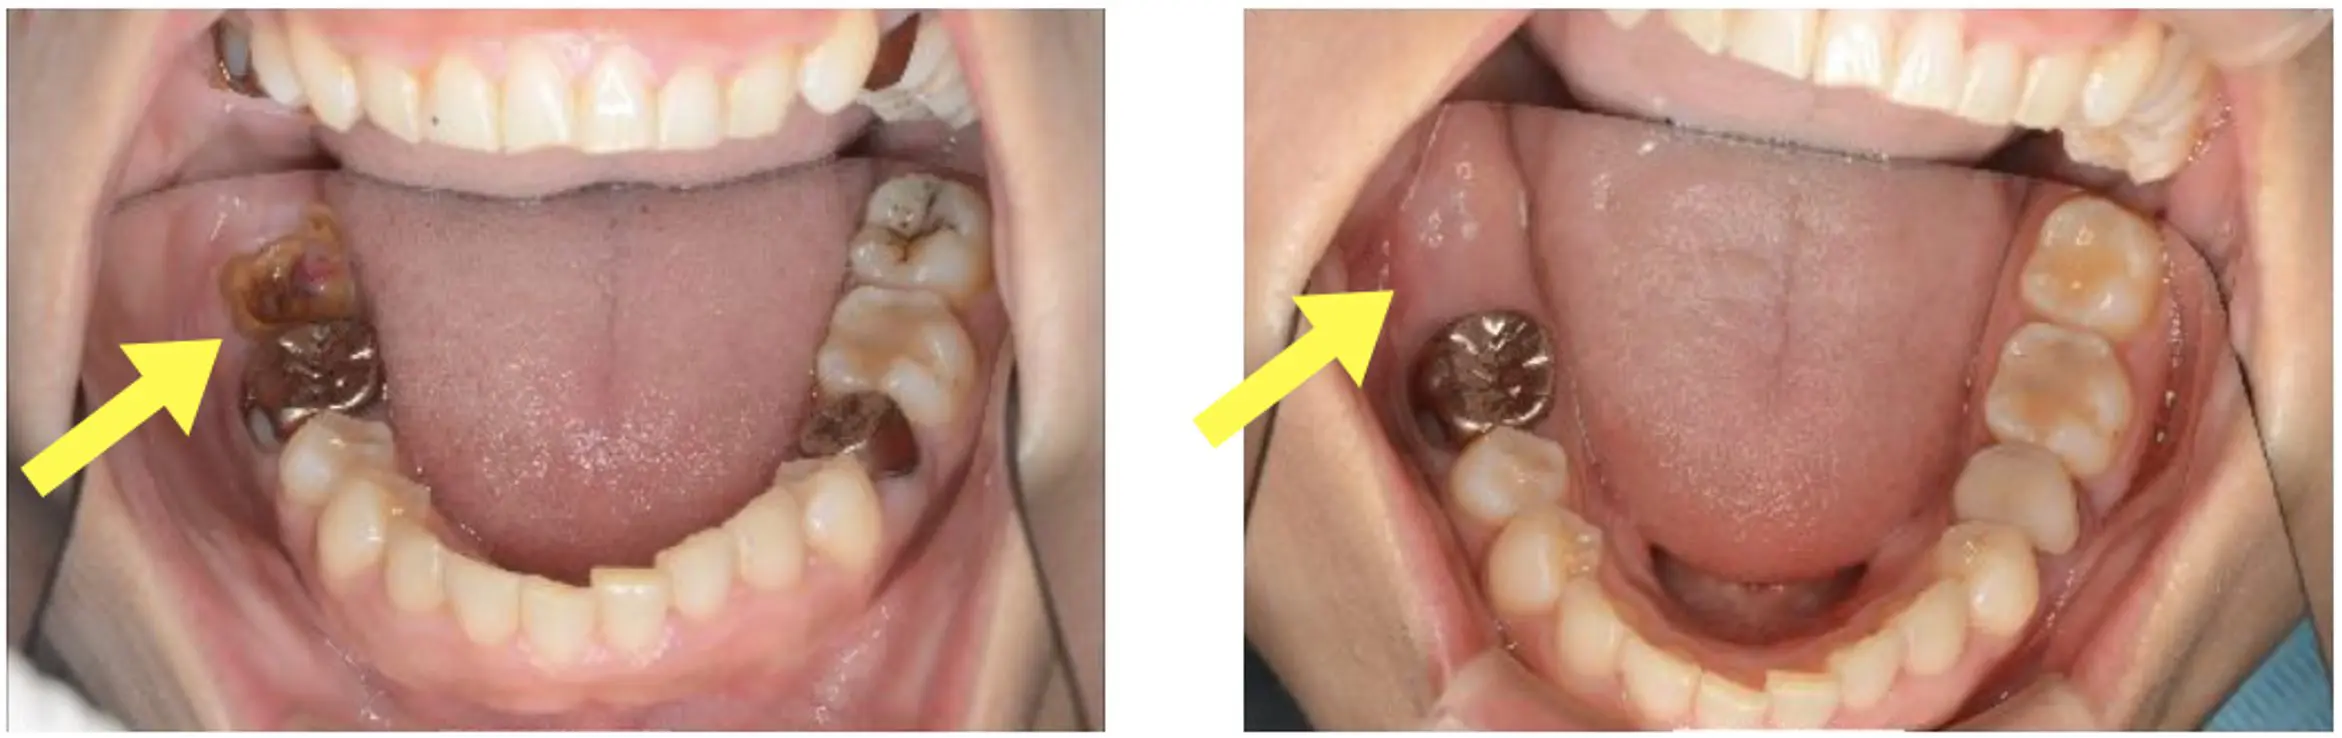 治療画像付き この虫歯はひどい状態 今後の治療の流れを解説